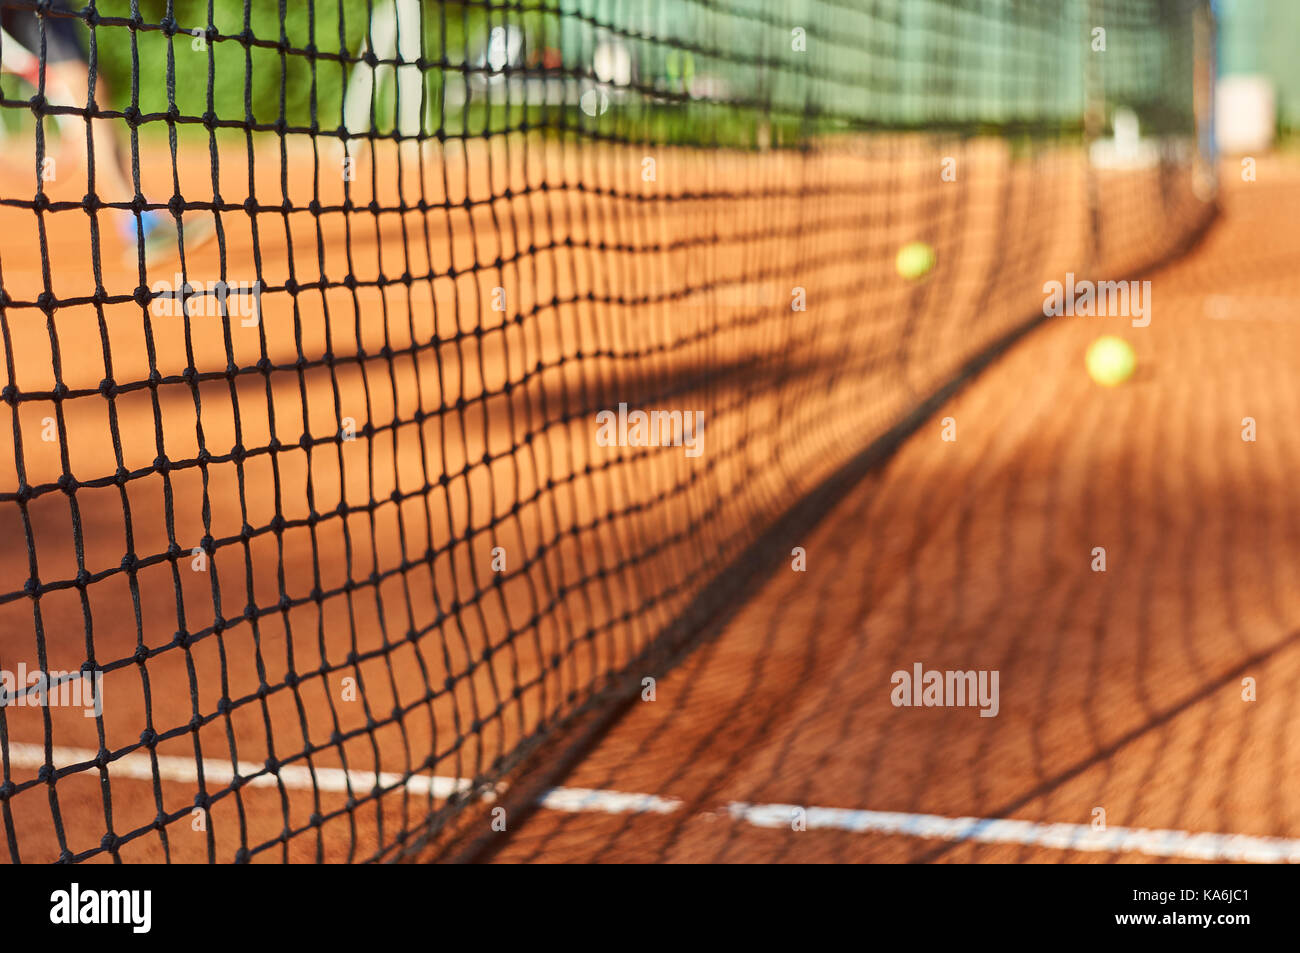 Tennis game Stock Photo